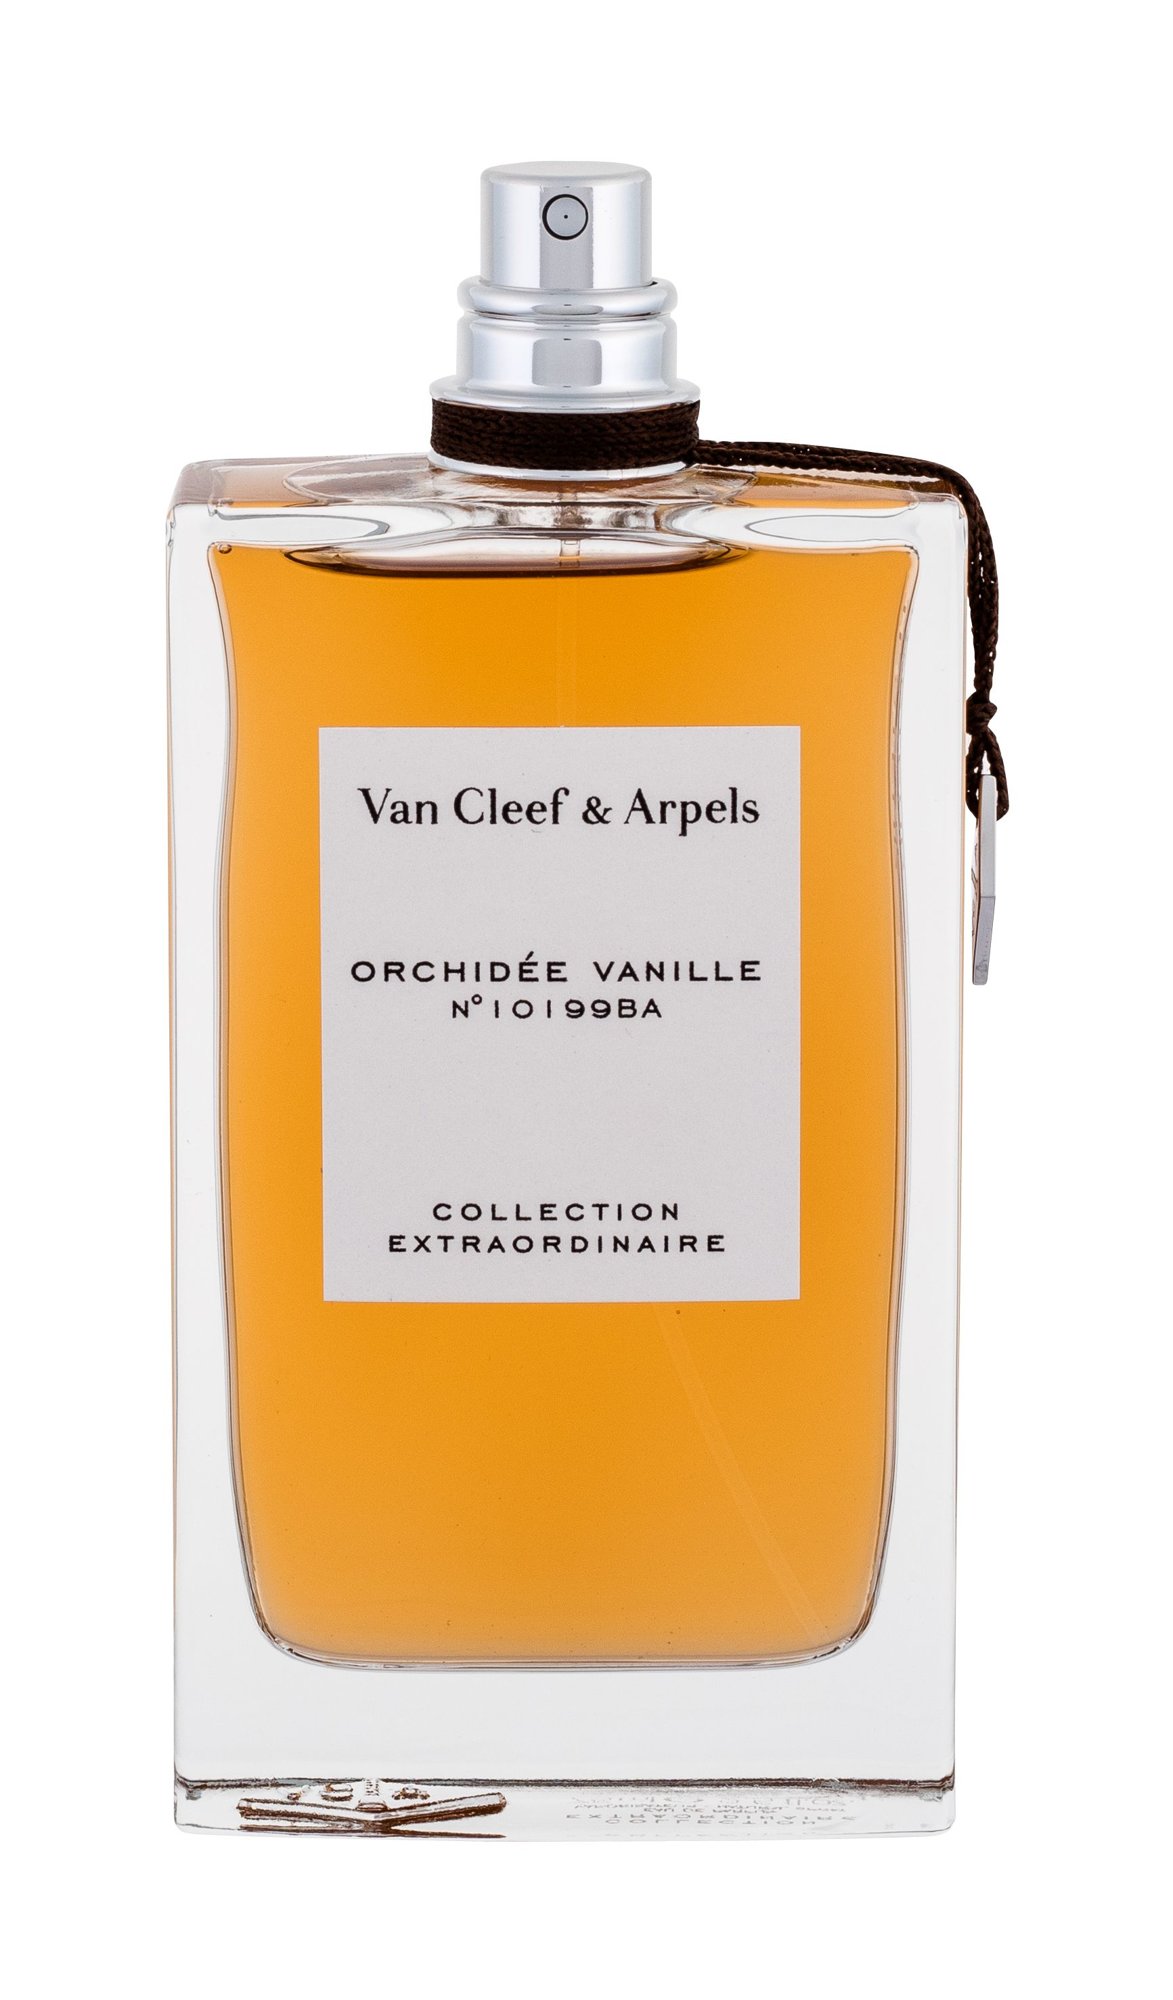 Van Cleef & Arpels Collection Extraordinaire Orchidee Vanille, edp 75ml - Teszter